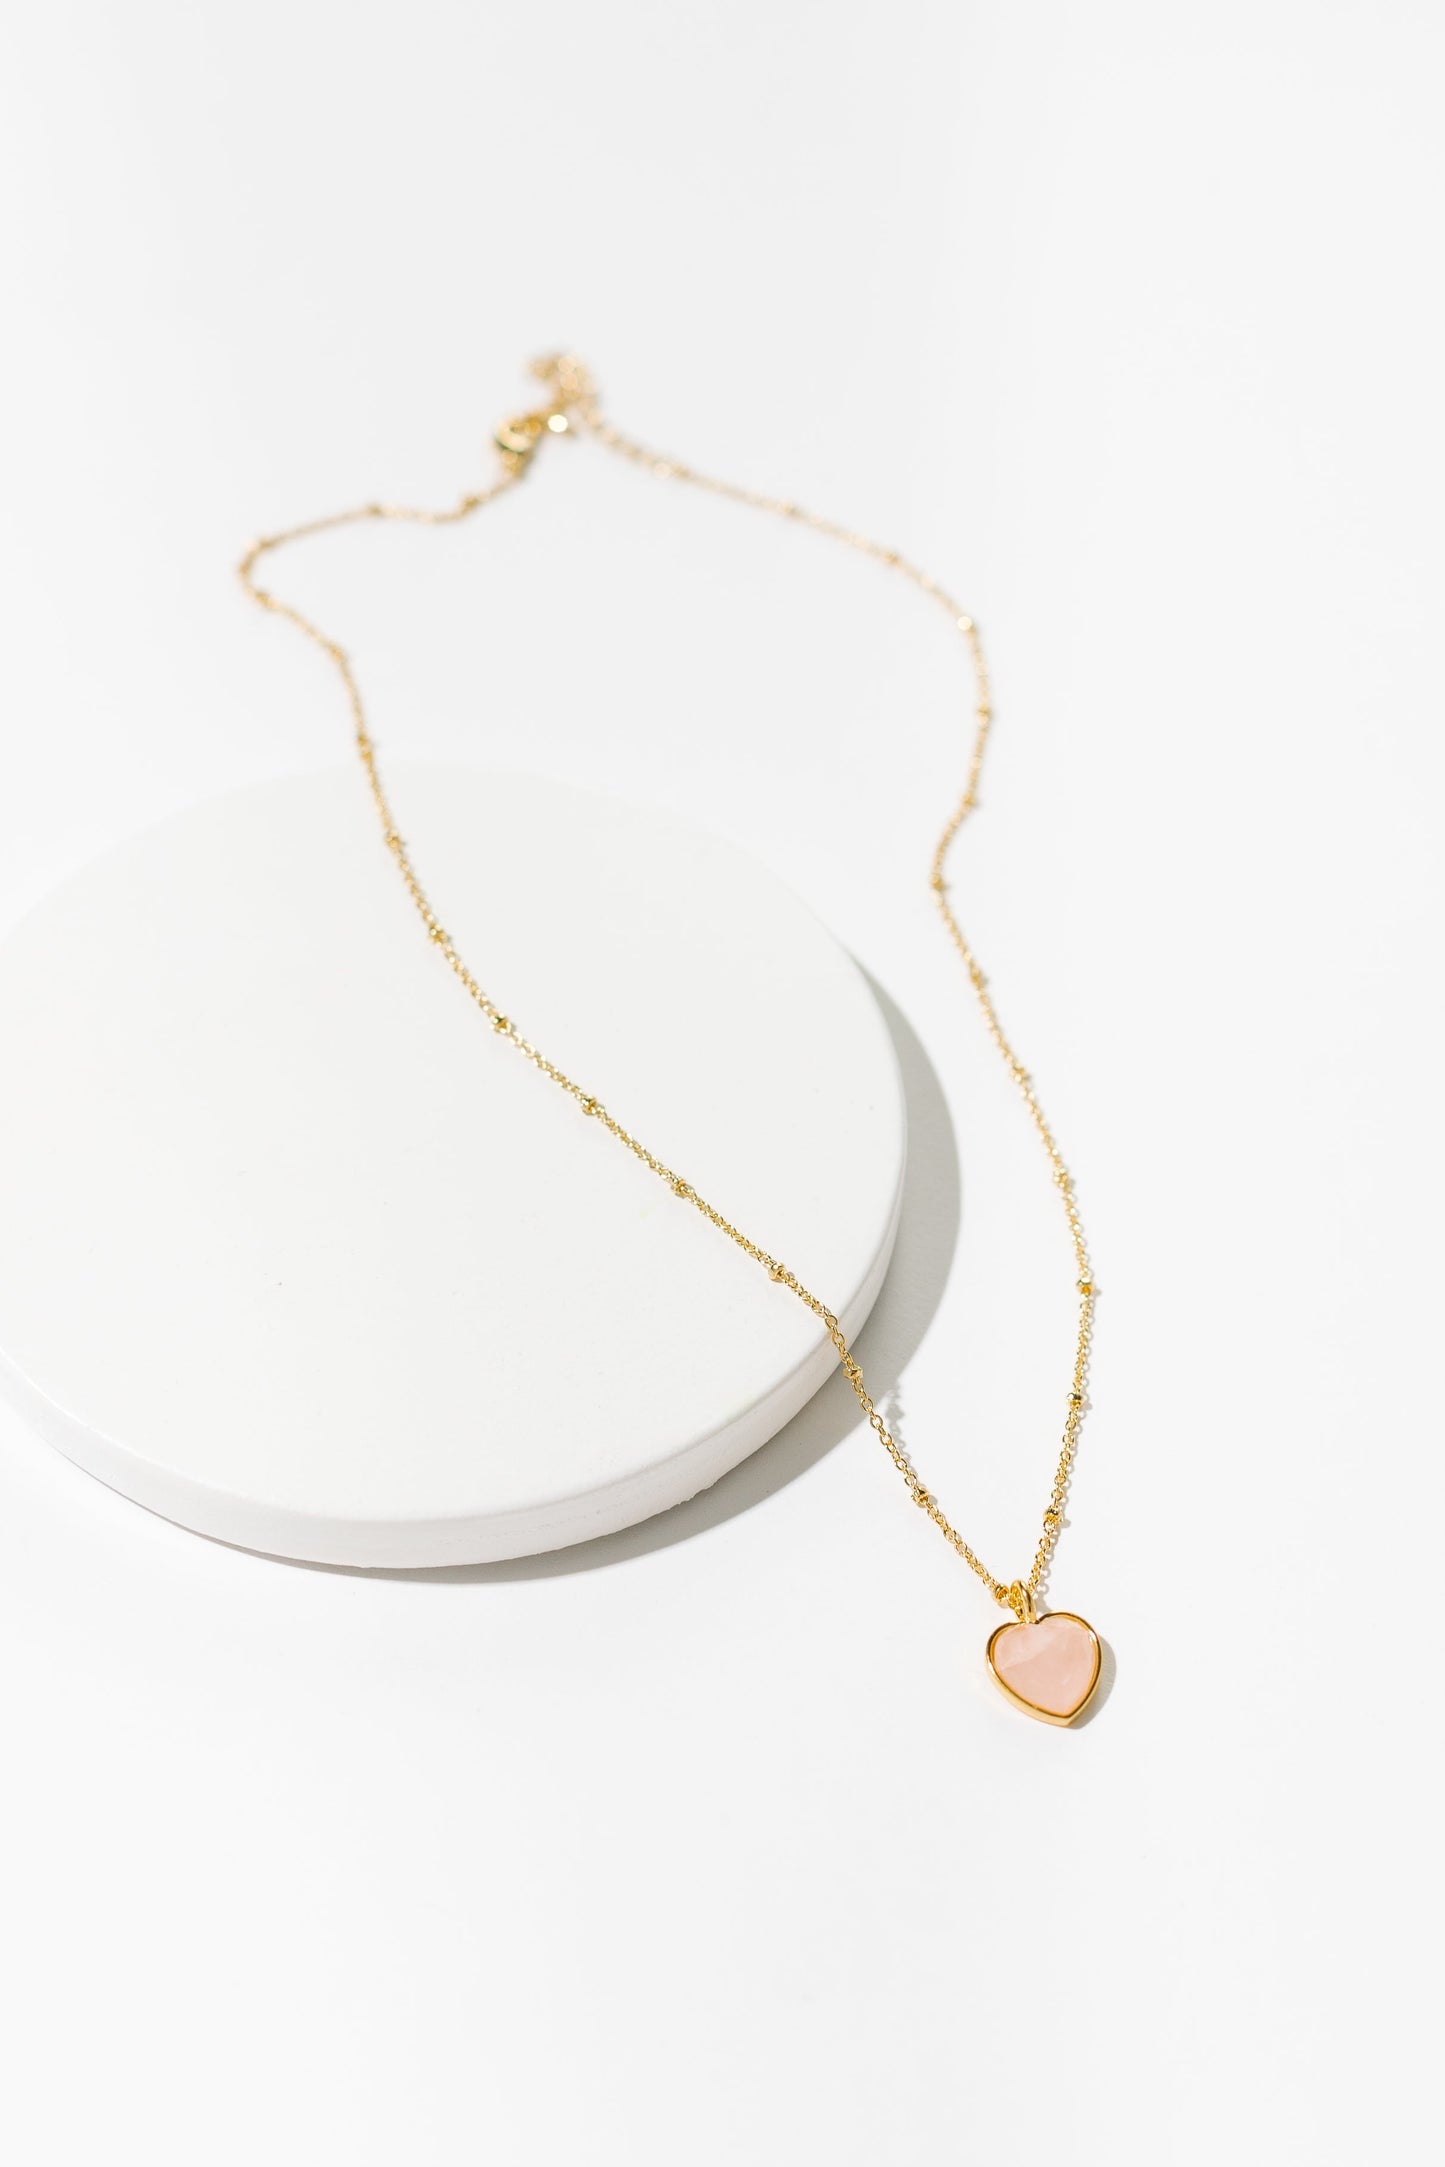 Cove Necklace Rose Quartz Heart Gold WOMEN'S NECKLACE Cove Accessories 